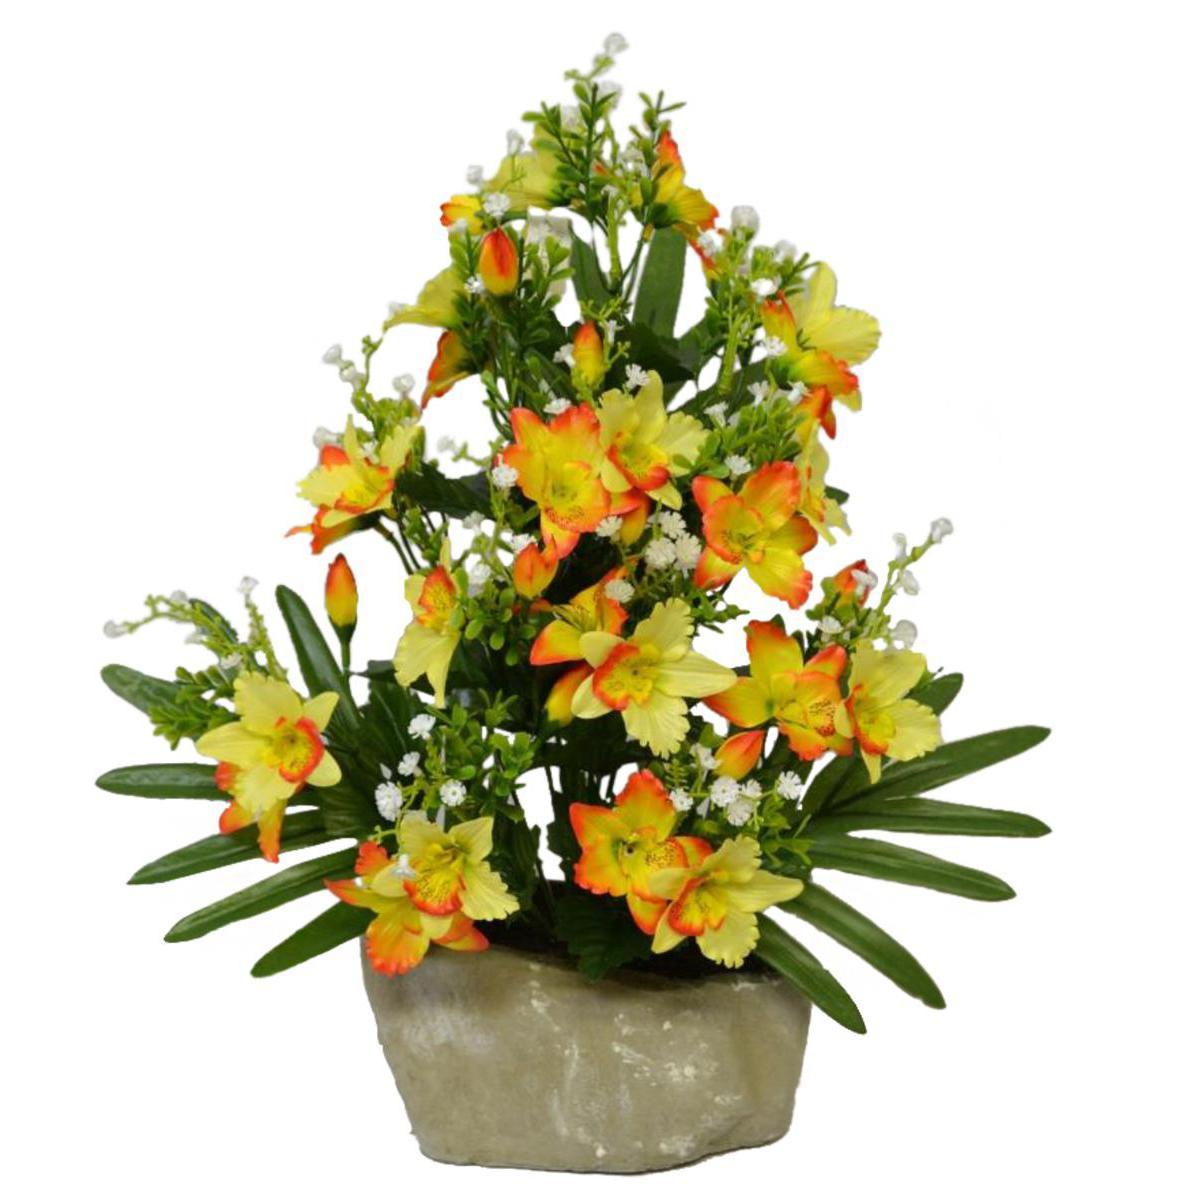 Jardinière d'orchidées et anthuriums - Polyester - H 38 x 40 cm - 2 coloris au choix